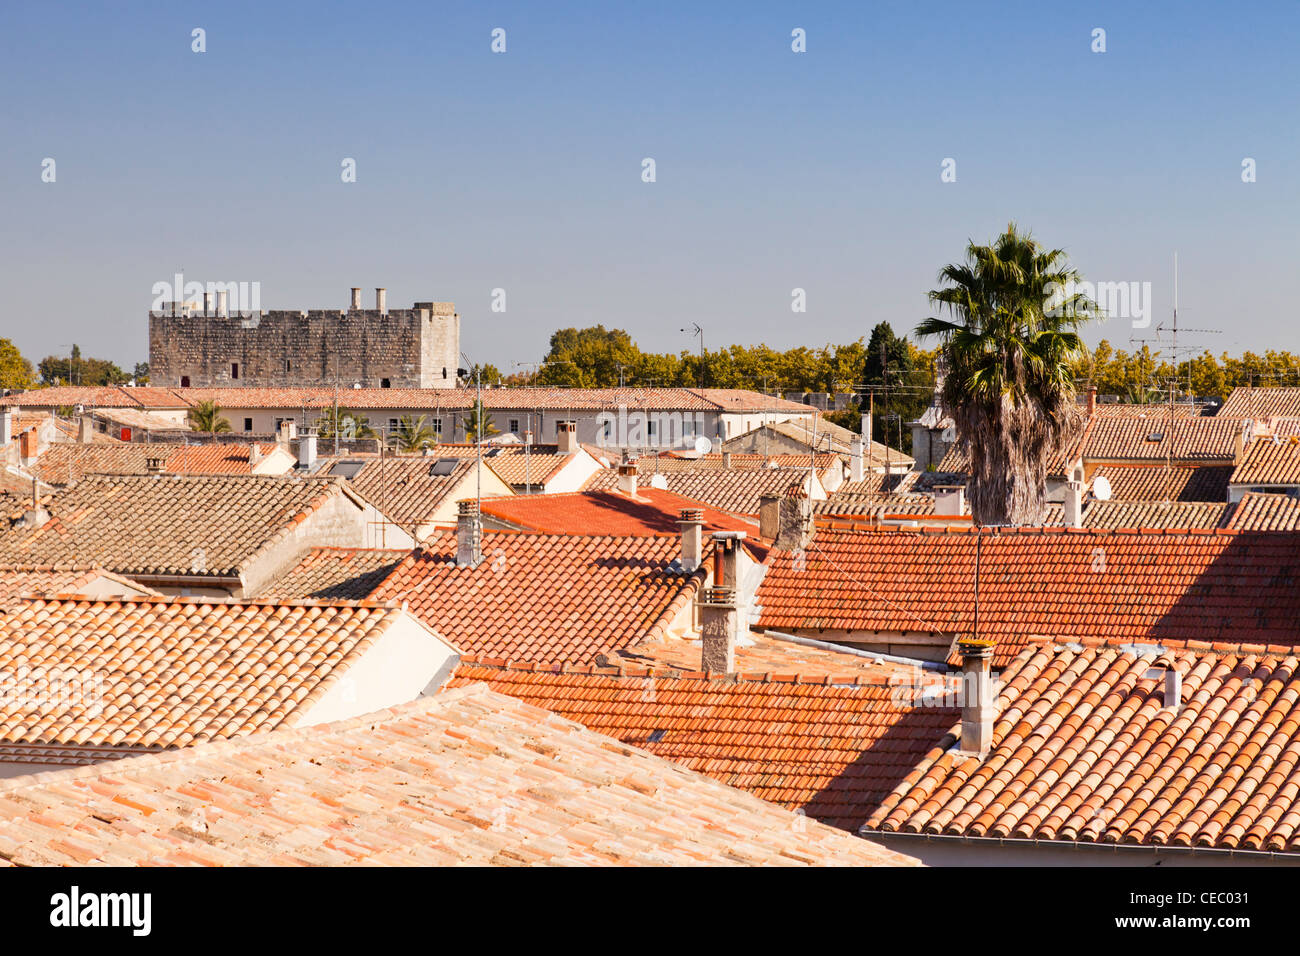 Ein Blick über die Dächer von den mittelalterlichen Hafen von Aigues-Mortes, Languedoc-Roussillon, Frankreich. Stockfoto